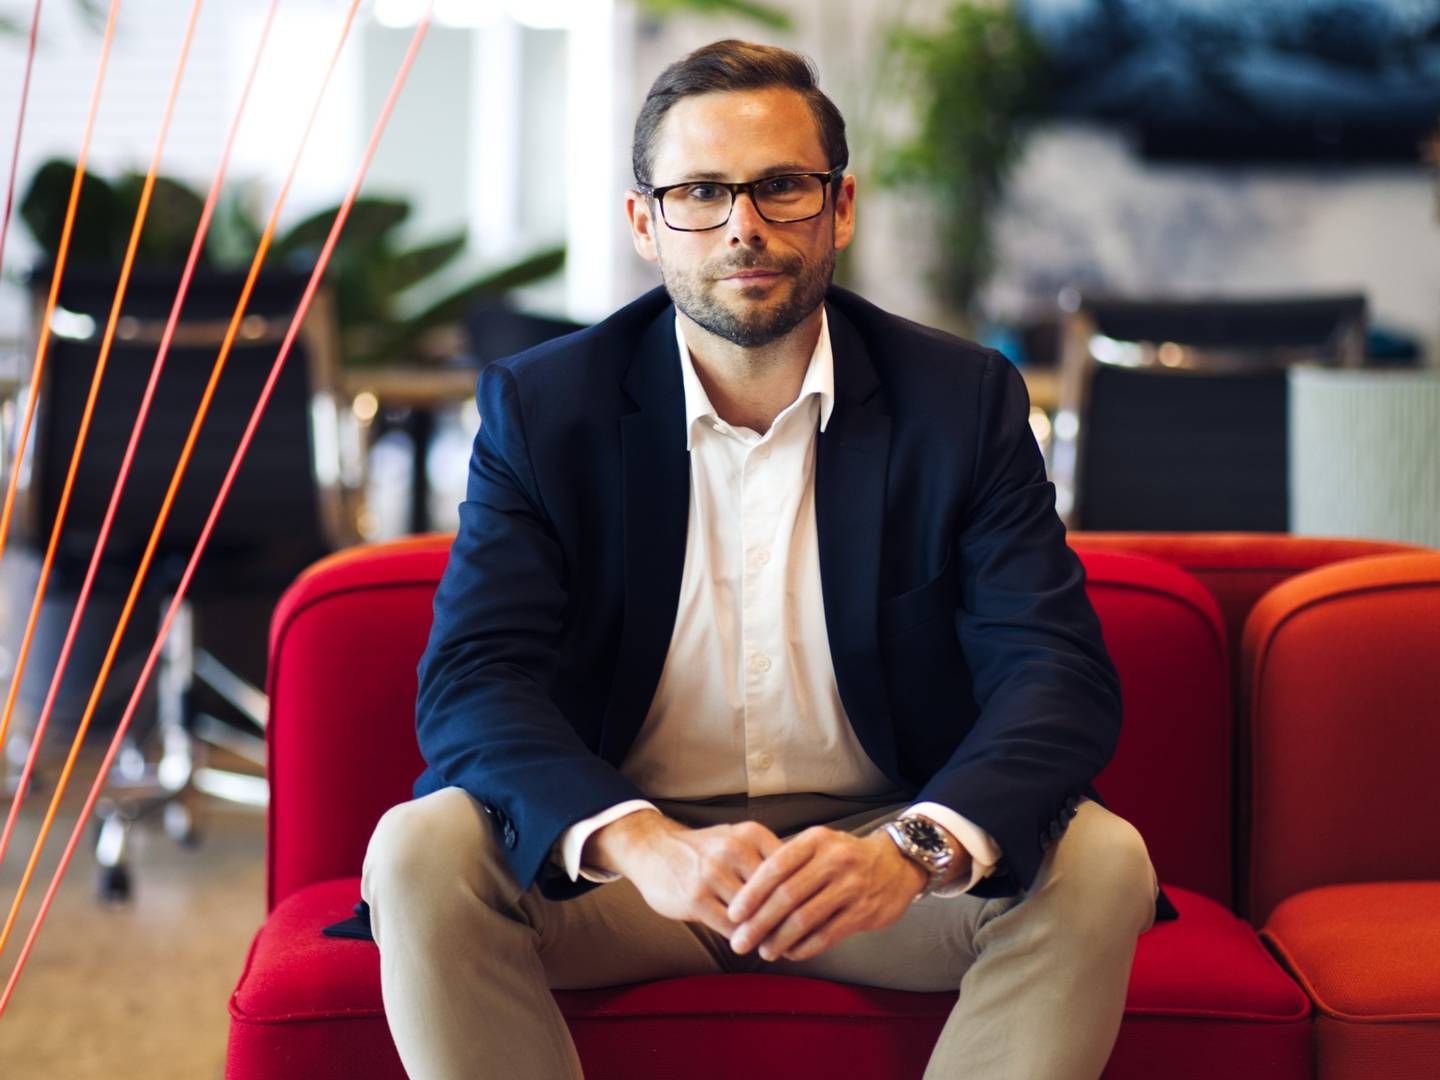 Anders Holm Jørgensen, adm. direktør i Proprty.ai, valgte at blive selvstændig, da jobbet blev mere politik end forretning. Nu står han i spidsen for i startup med udgangspunkt i AI og forudser store omvæltninger i it-branchen i takt med, at kunstig intelligens vinder frem. | Foto: Pr-foto